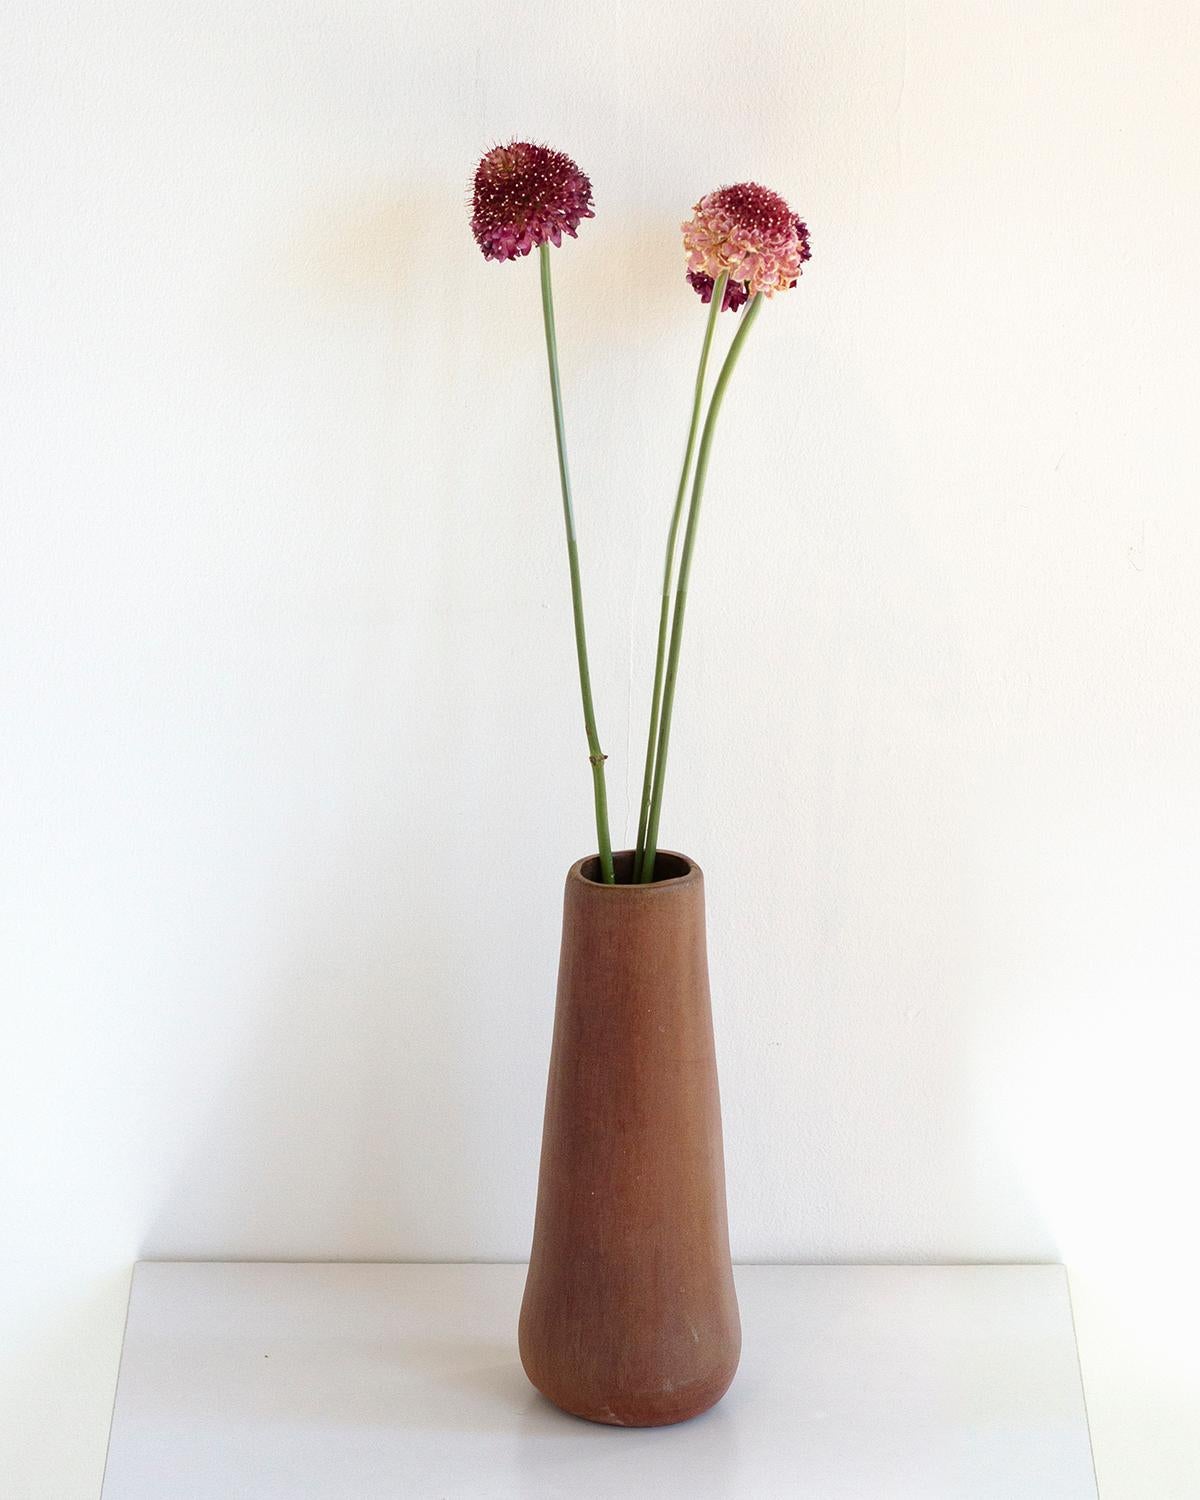 Ce vase Solitaire Clay est fabriqué à partir d'argile grillée et est parfait pour présenter des fleurs, des branches ou d'autres décorations dans un luxe minimaliste. Sa teinte brune rustique ajoute à son élégance tranquille, et il constitue un